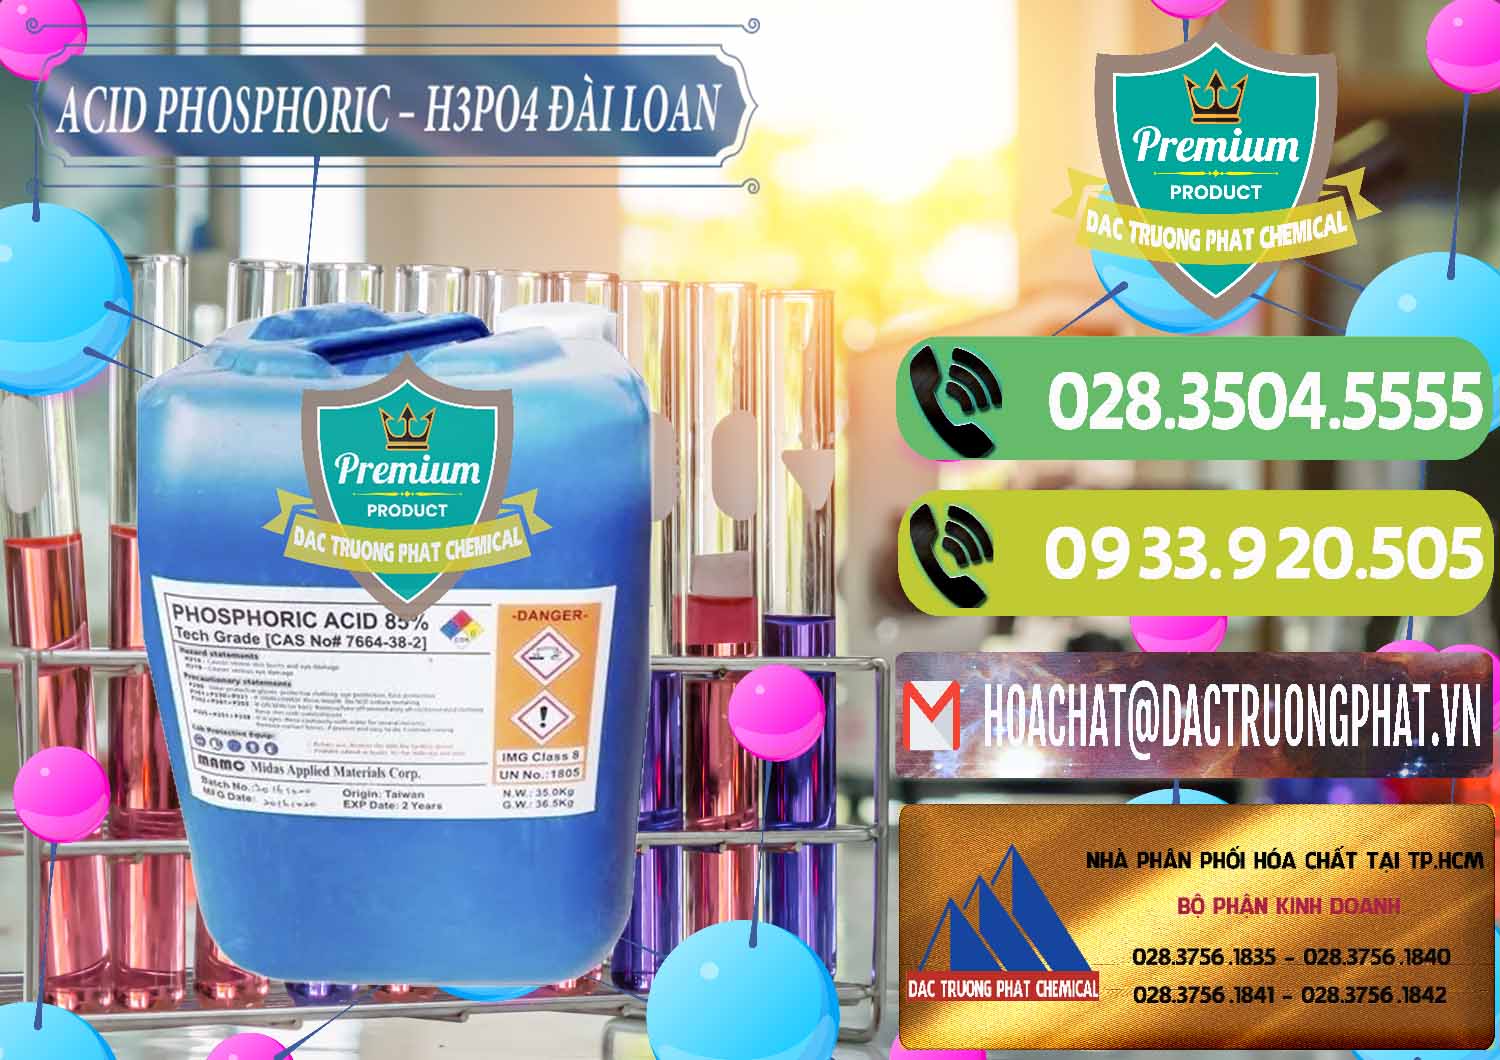 Nơi chuyên cung cấp và bán Axit Phosphoric - Acid Phosphoric H3PO4 85% Đài Loan Taiwan - 0351 - Đơn vị cung cấp và phân phối hóa chất tại TP.HCM - hoachatmientay.vn